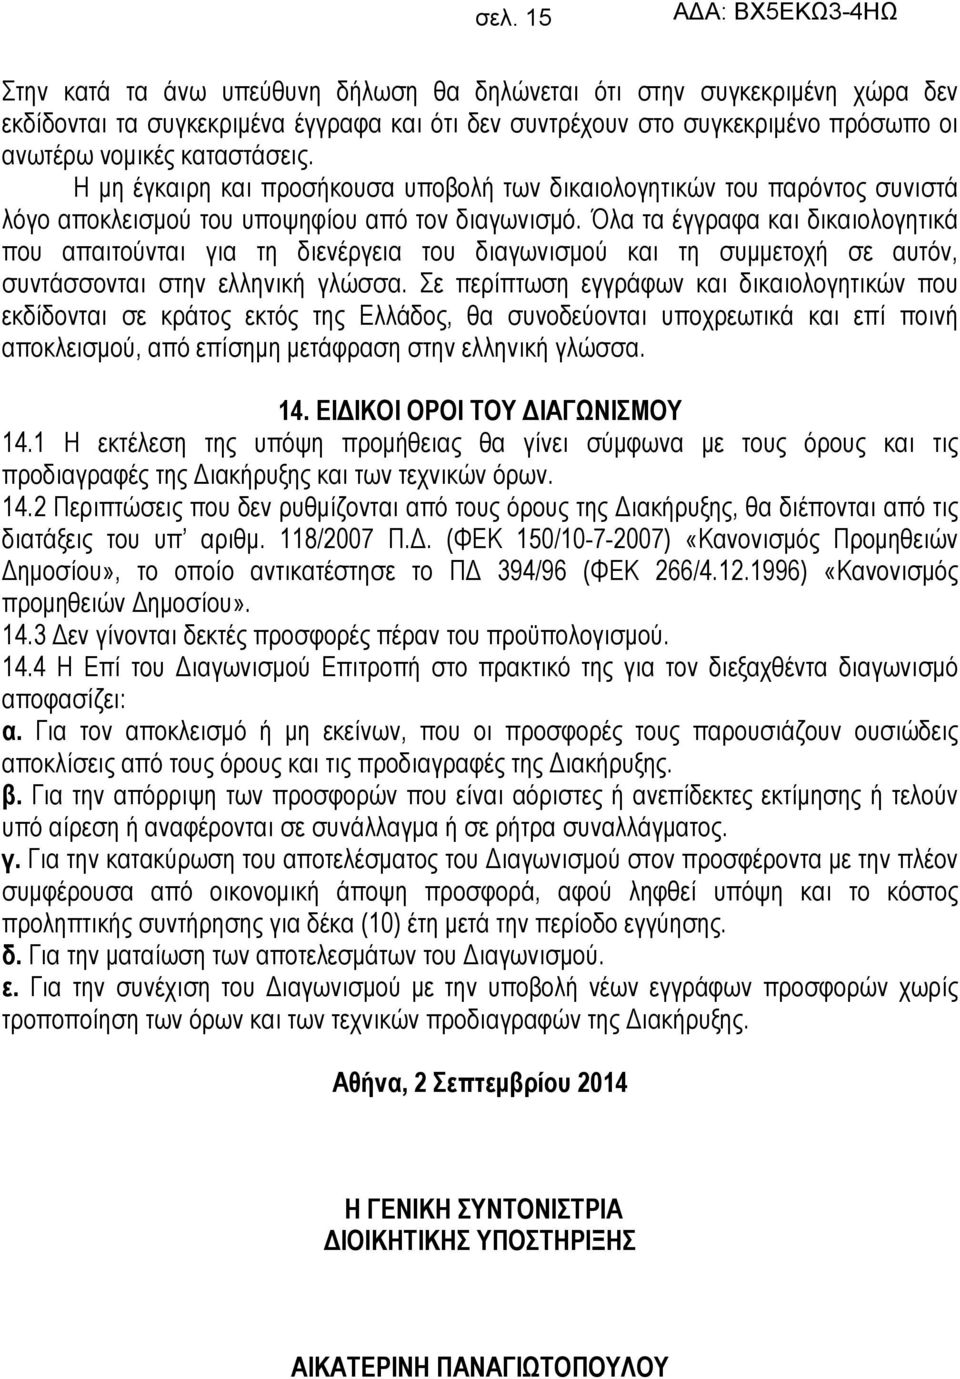 Όλα τα έγγραφα και δικαιολογητικά που απαιτούνται για τη διενέργεια του διαγωνισμού και τη συμμετοχή σε αυτόν, συντάσσονται στην ελληνική γλώσσα.